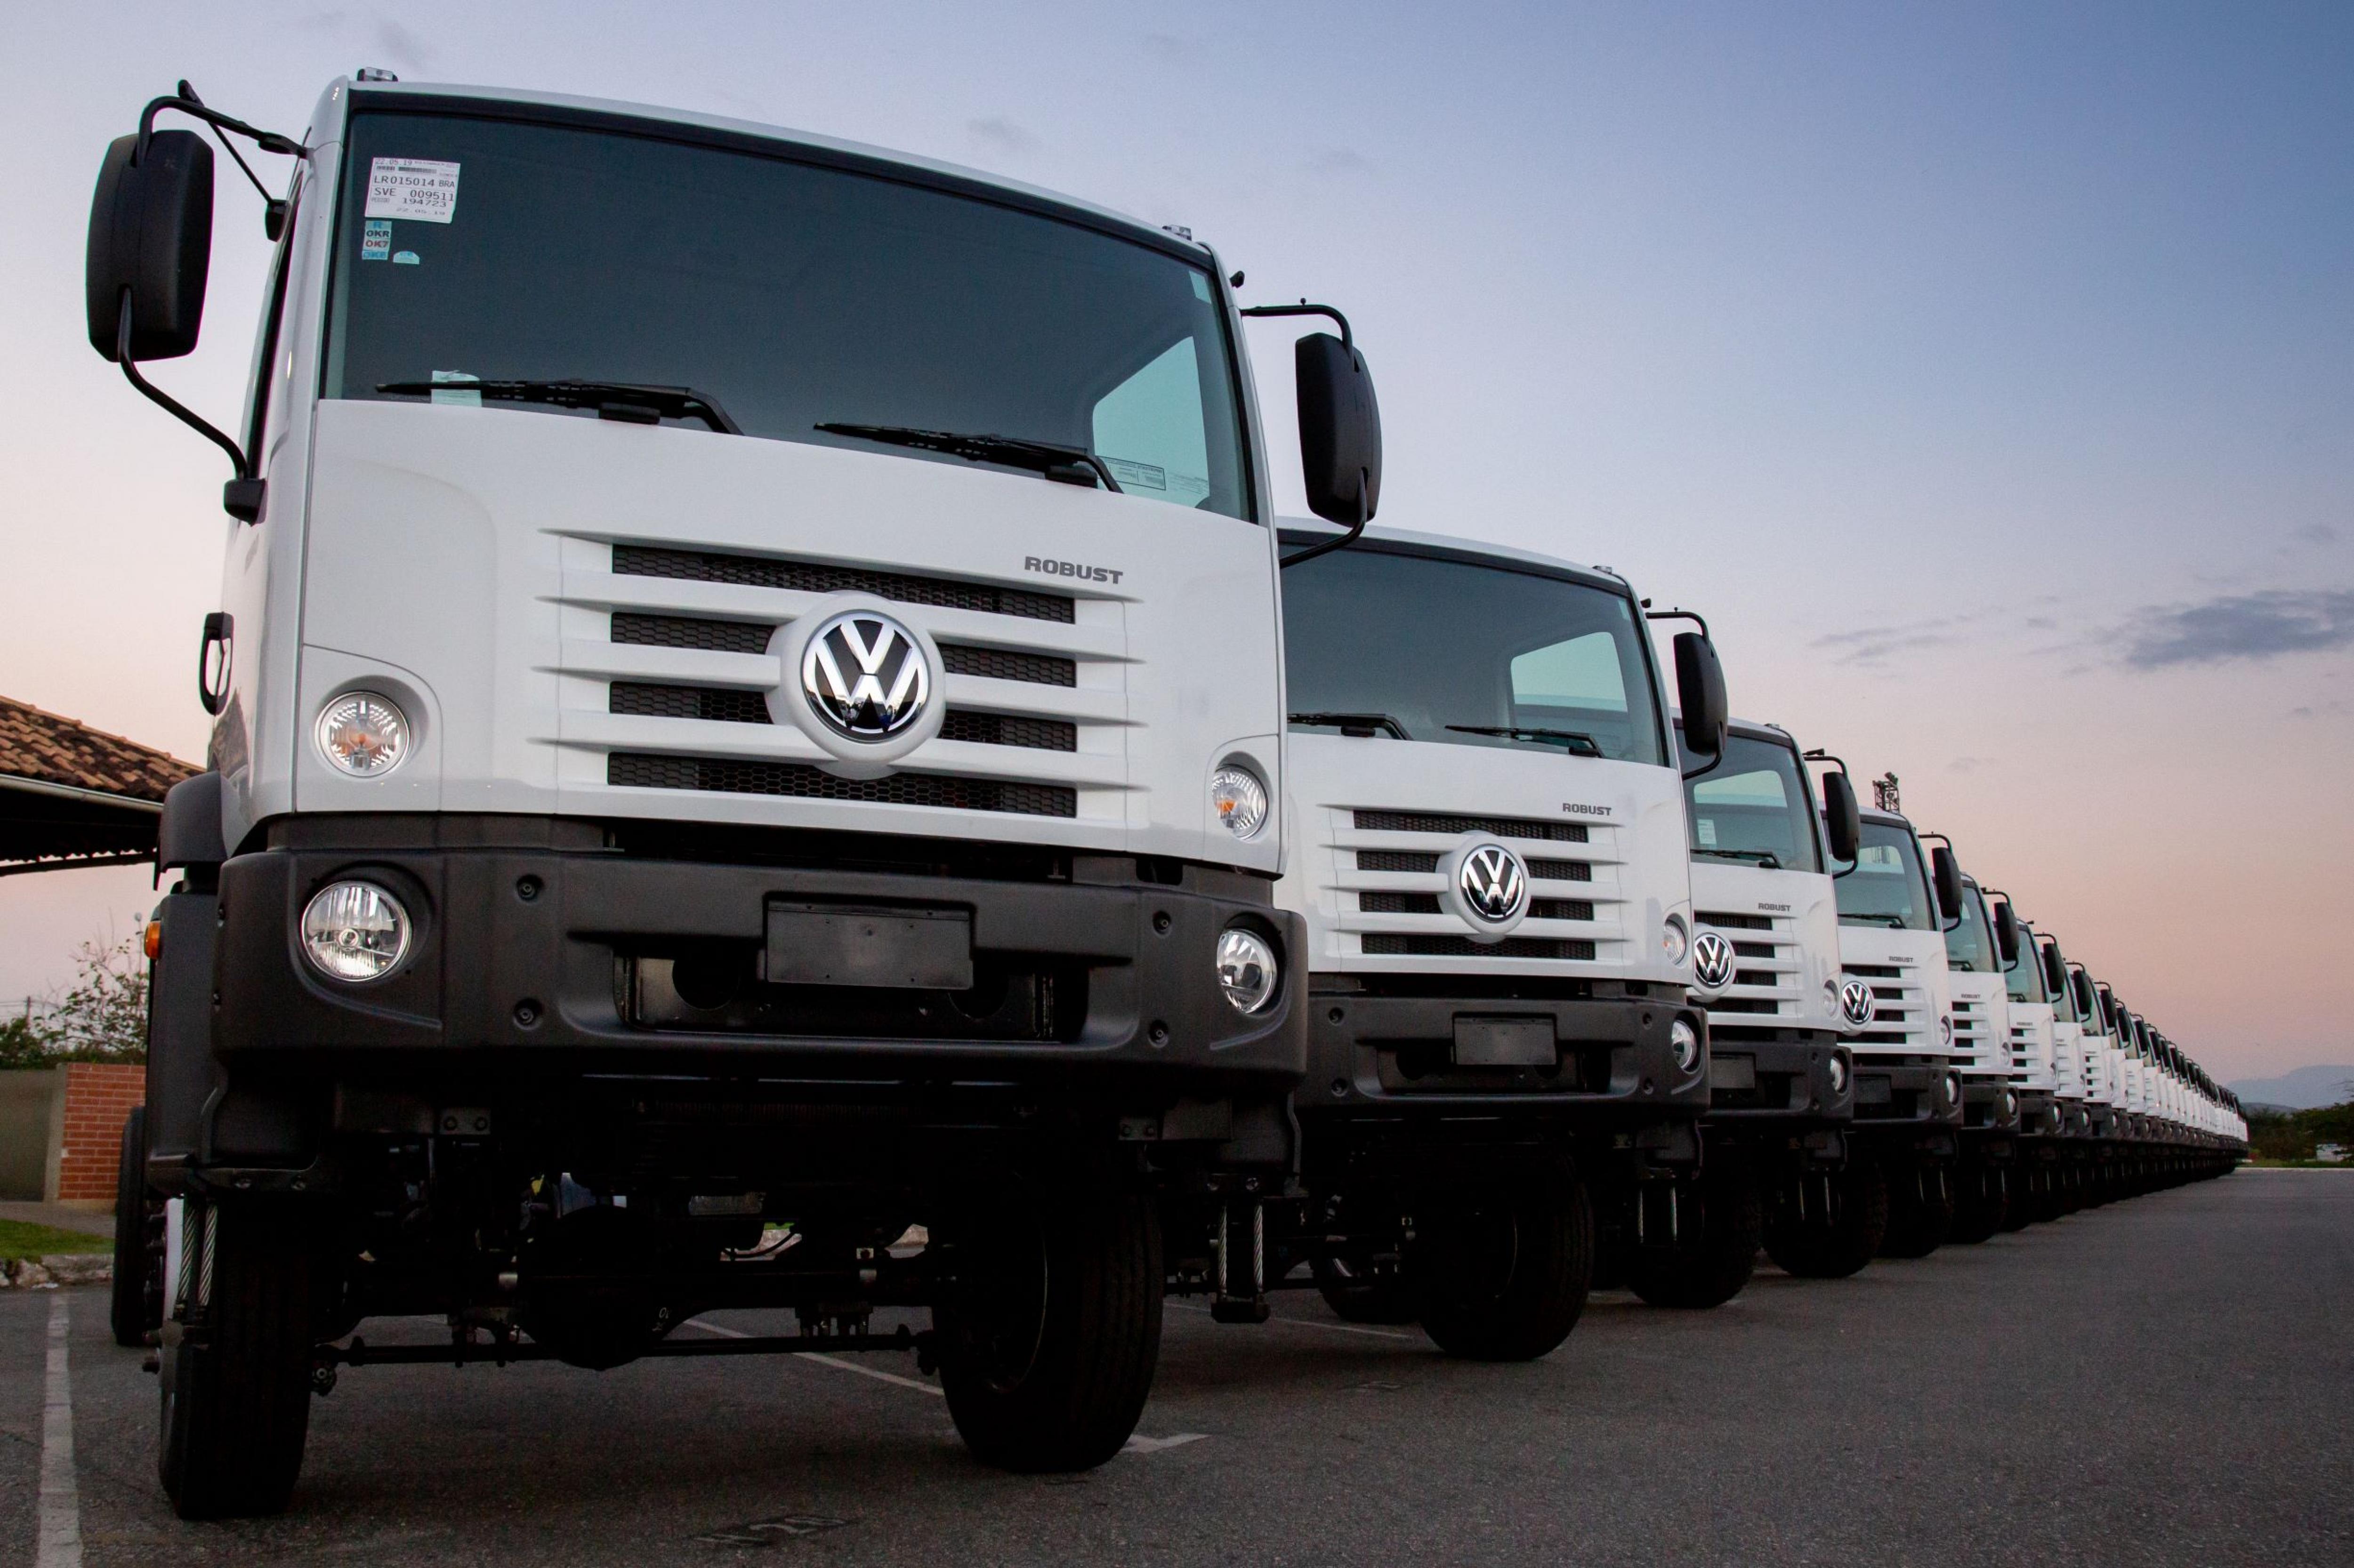 Volkswagen Caminhões e Ônibus debuta en el mercado asiático